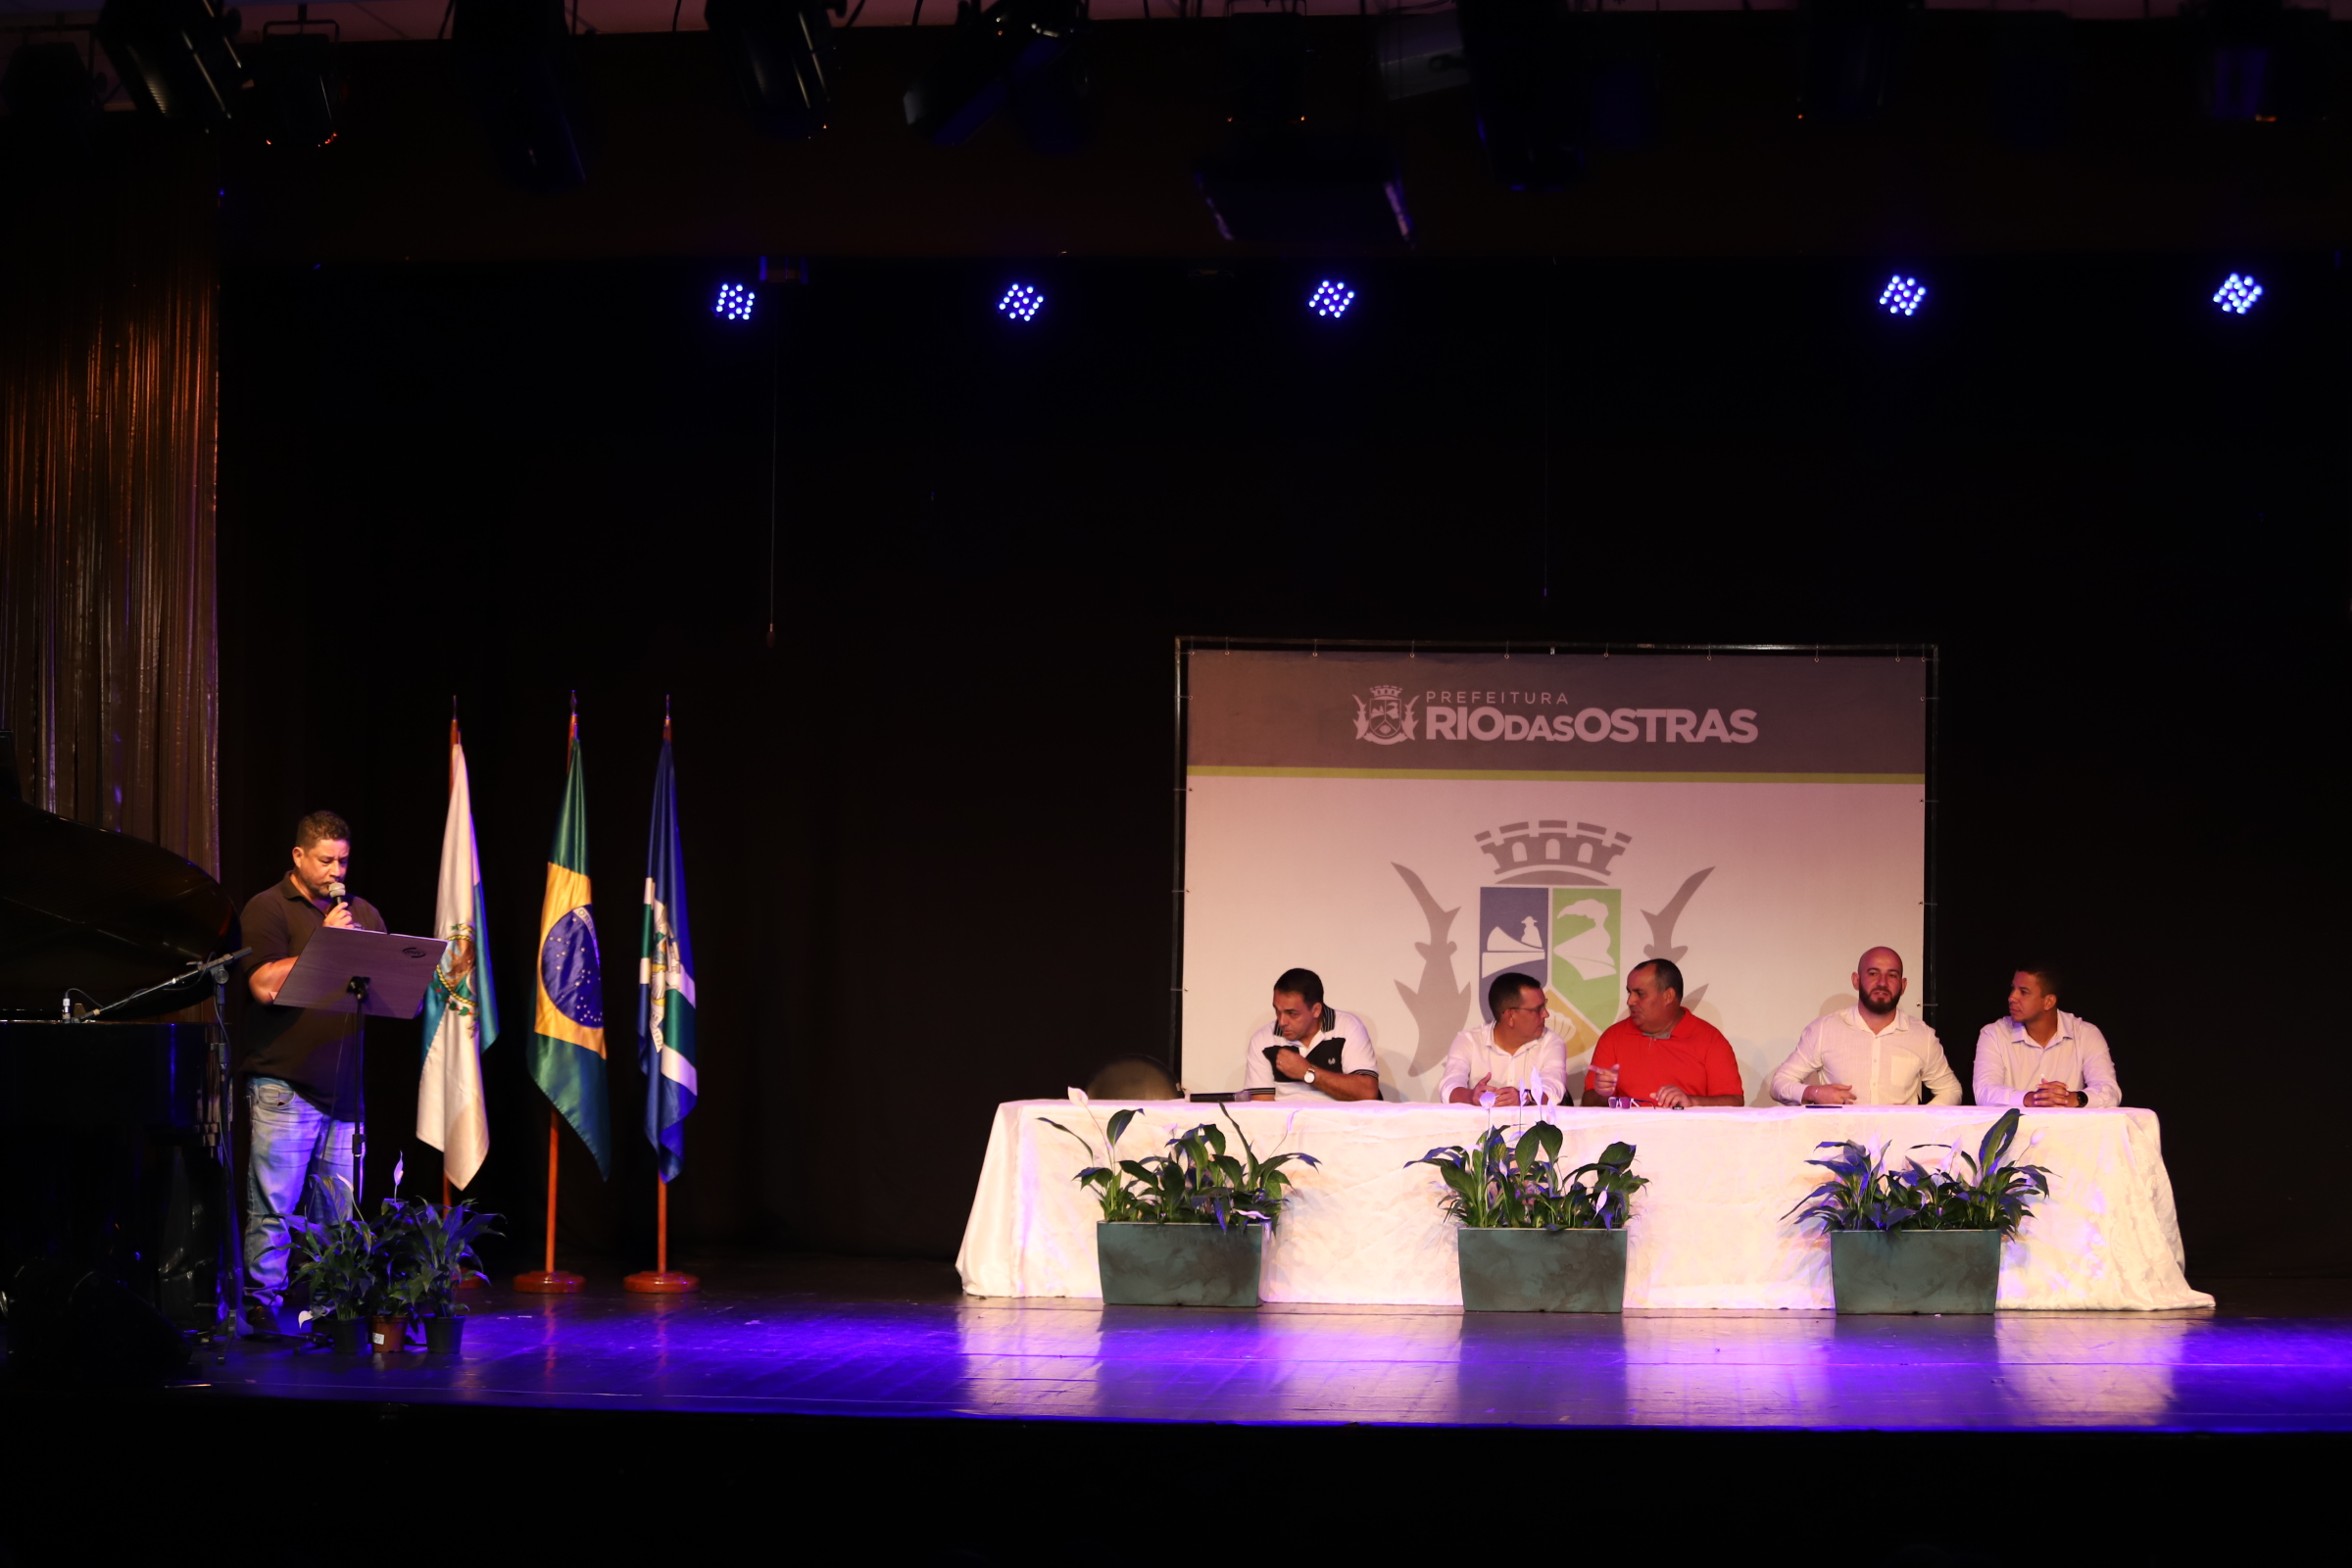 Comemorações do Aniversário da Cidade de Rio das Ostras começam com solenidade no Teatro